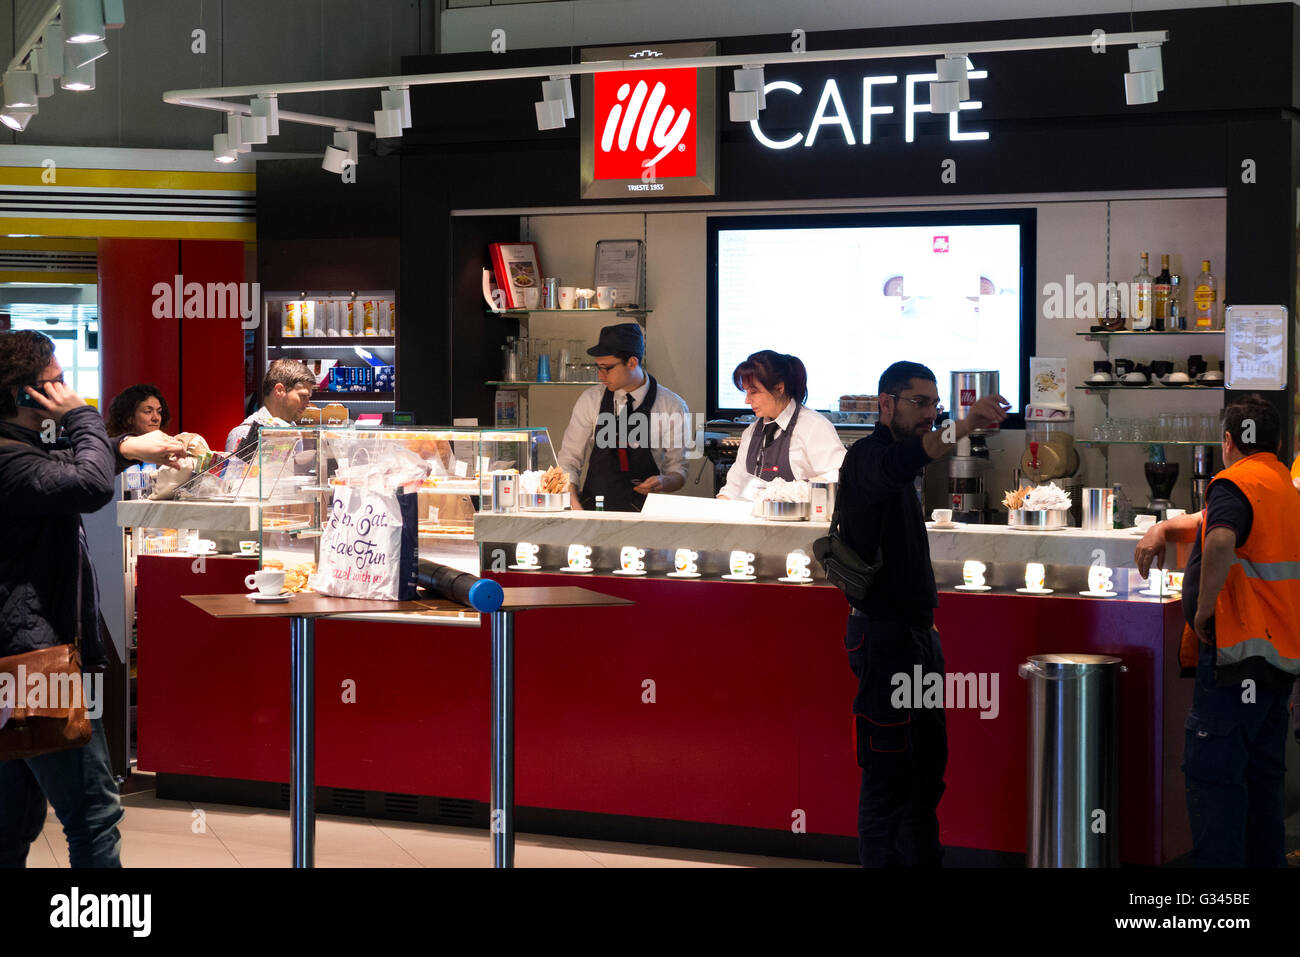 Illy caffè di marca / caffetteria Cafe che serve / è che serve bevande e spuntini per i passeggeri all'aeroporto di Milano, Italia. Foto Stock